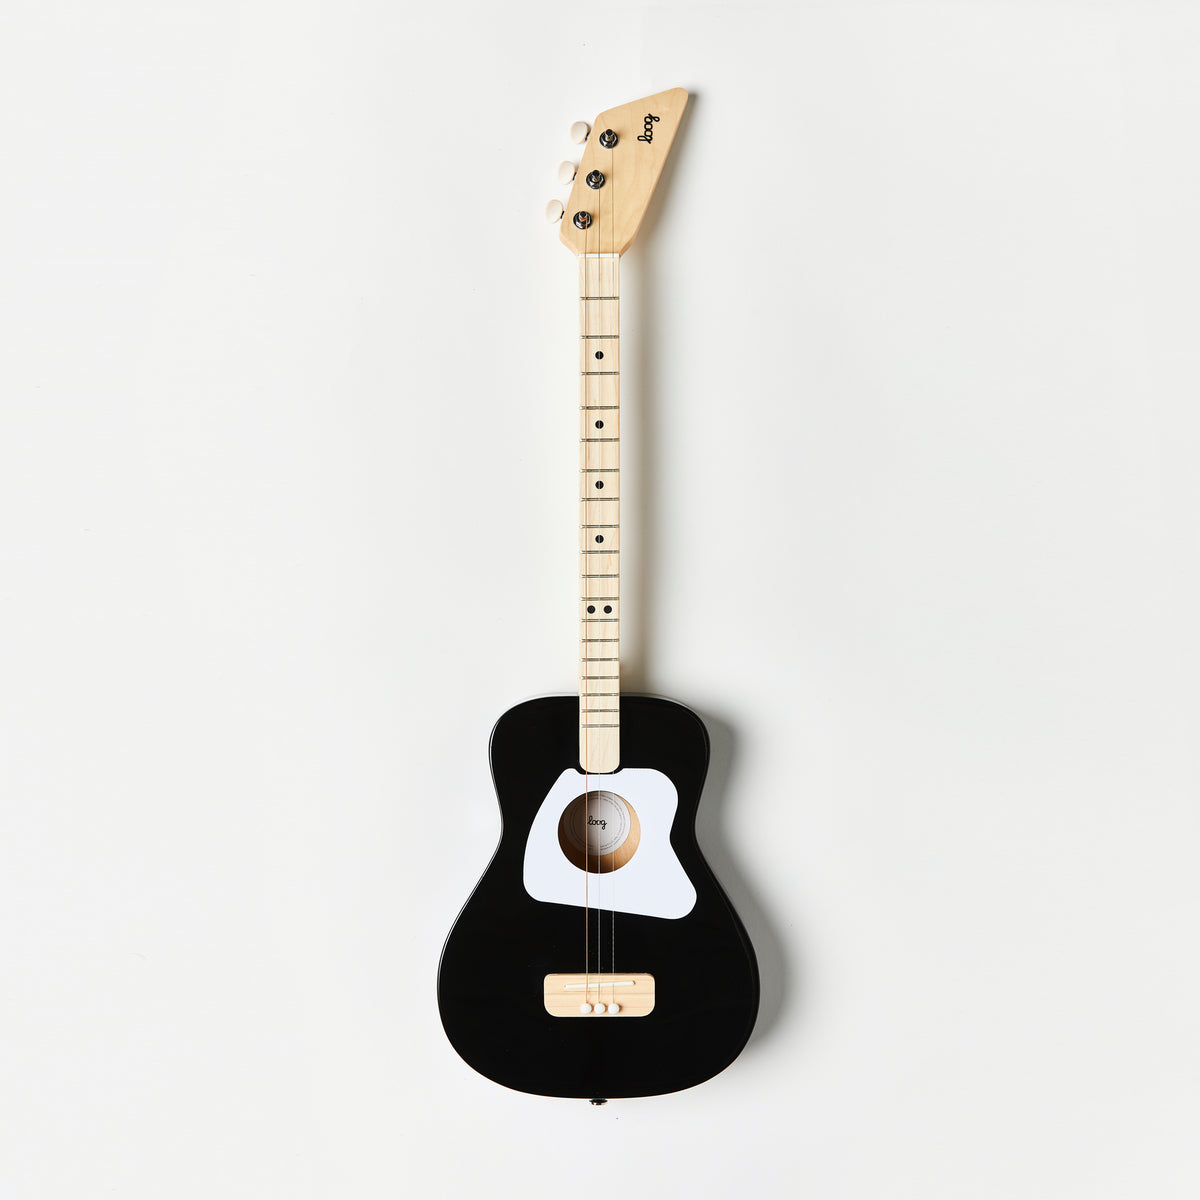 black-guitar-strap-gig-bag black-guitar-strap-wall-hanger black-guitar-strap-stand